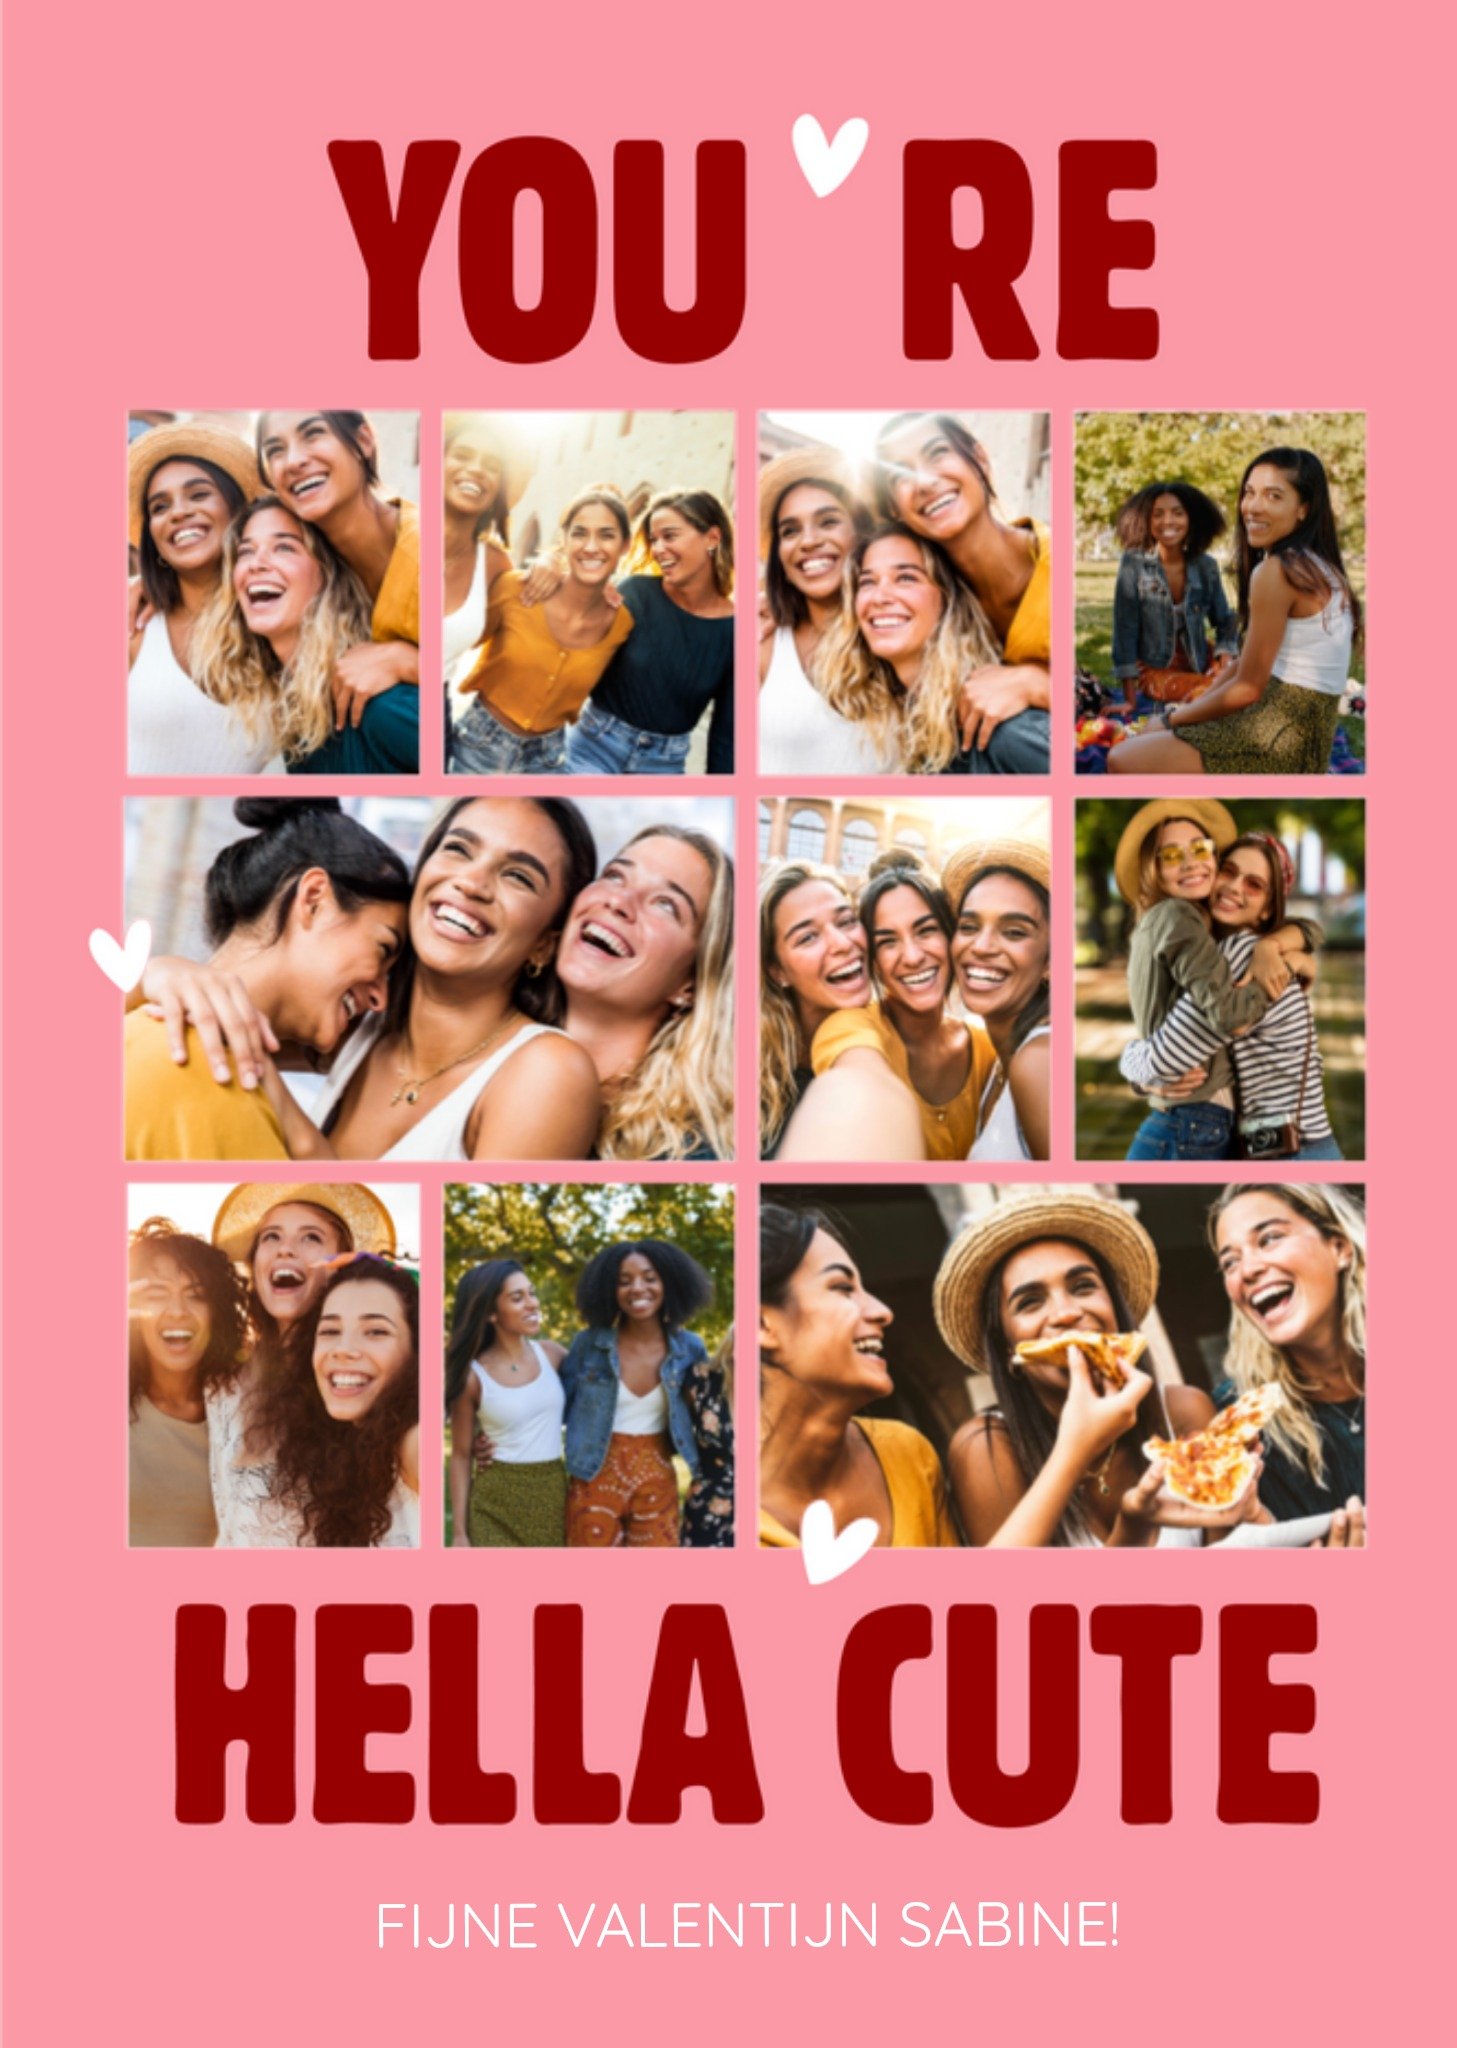 Valentijnskaart - Grote kaart - You're hella cute